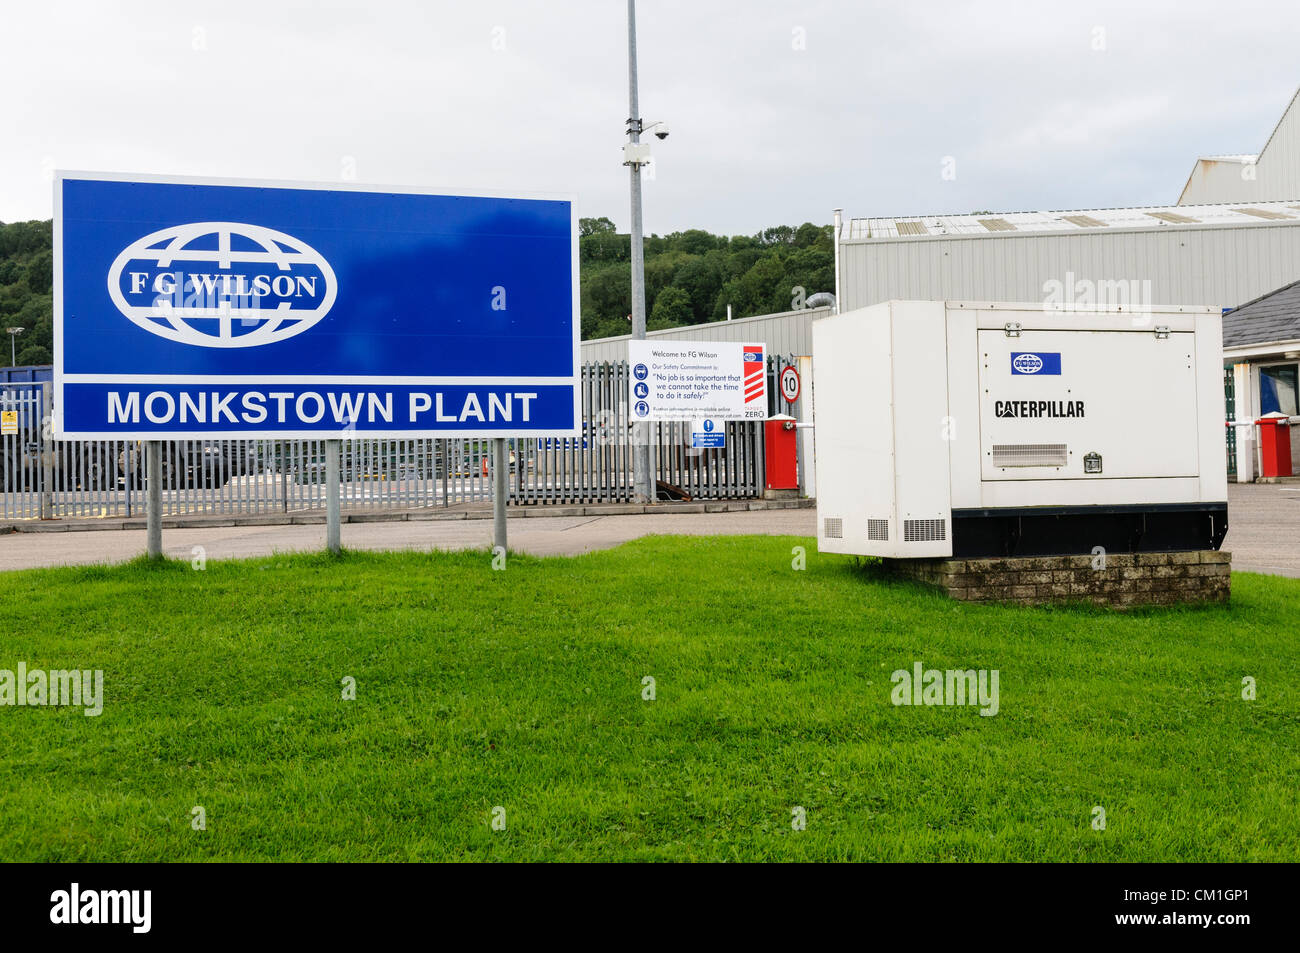 Nordirland, Belfast 14.09.2012 - FG Wilson, Northern Ireland viertgrößte Arbeitgeber und Hersteller von Diesel-Generatoren, kündigt erhebliche Arbeitsplatzverluste mit bis zu 1000 Personen ihren Arbeitsplatz zu verlieren. Stockfoto